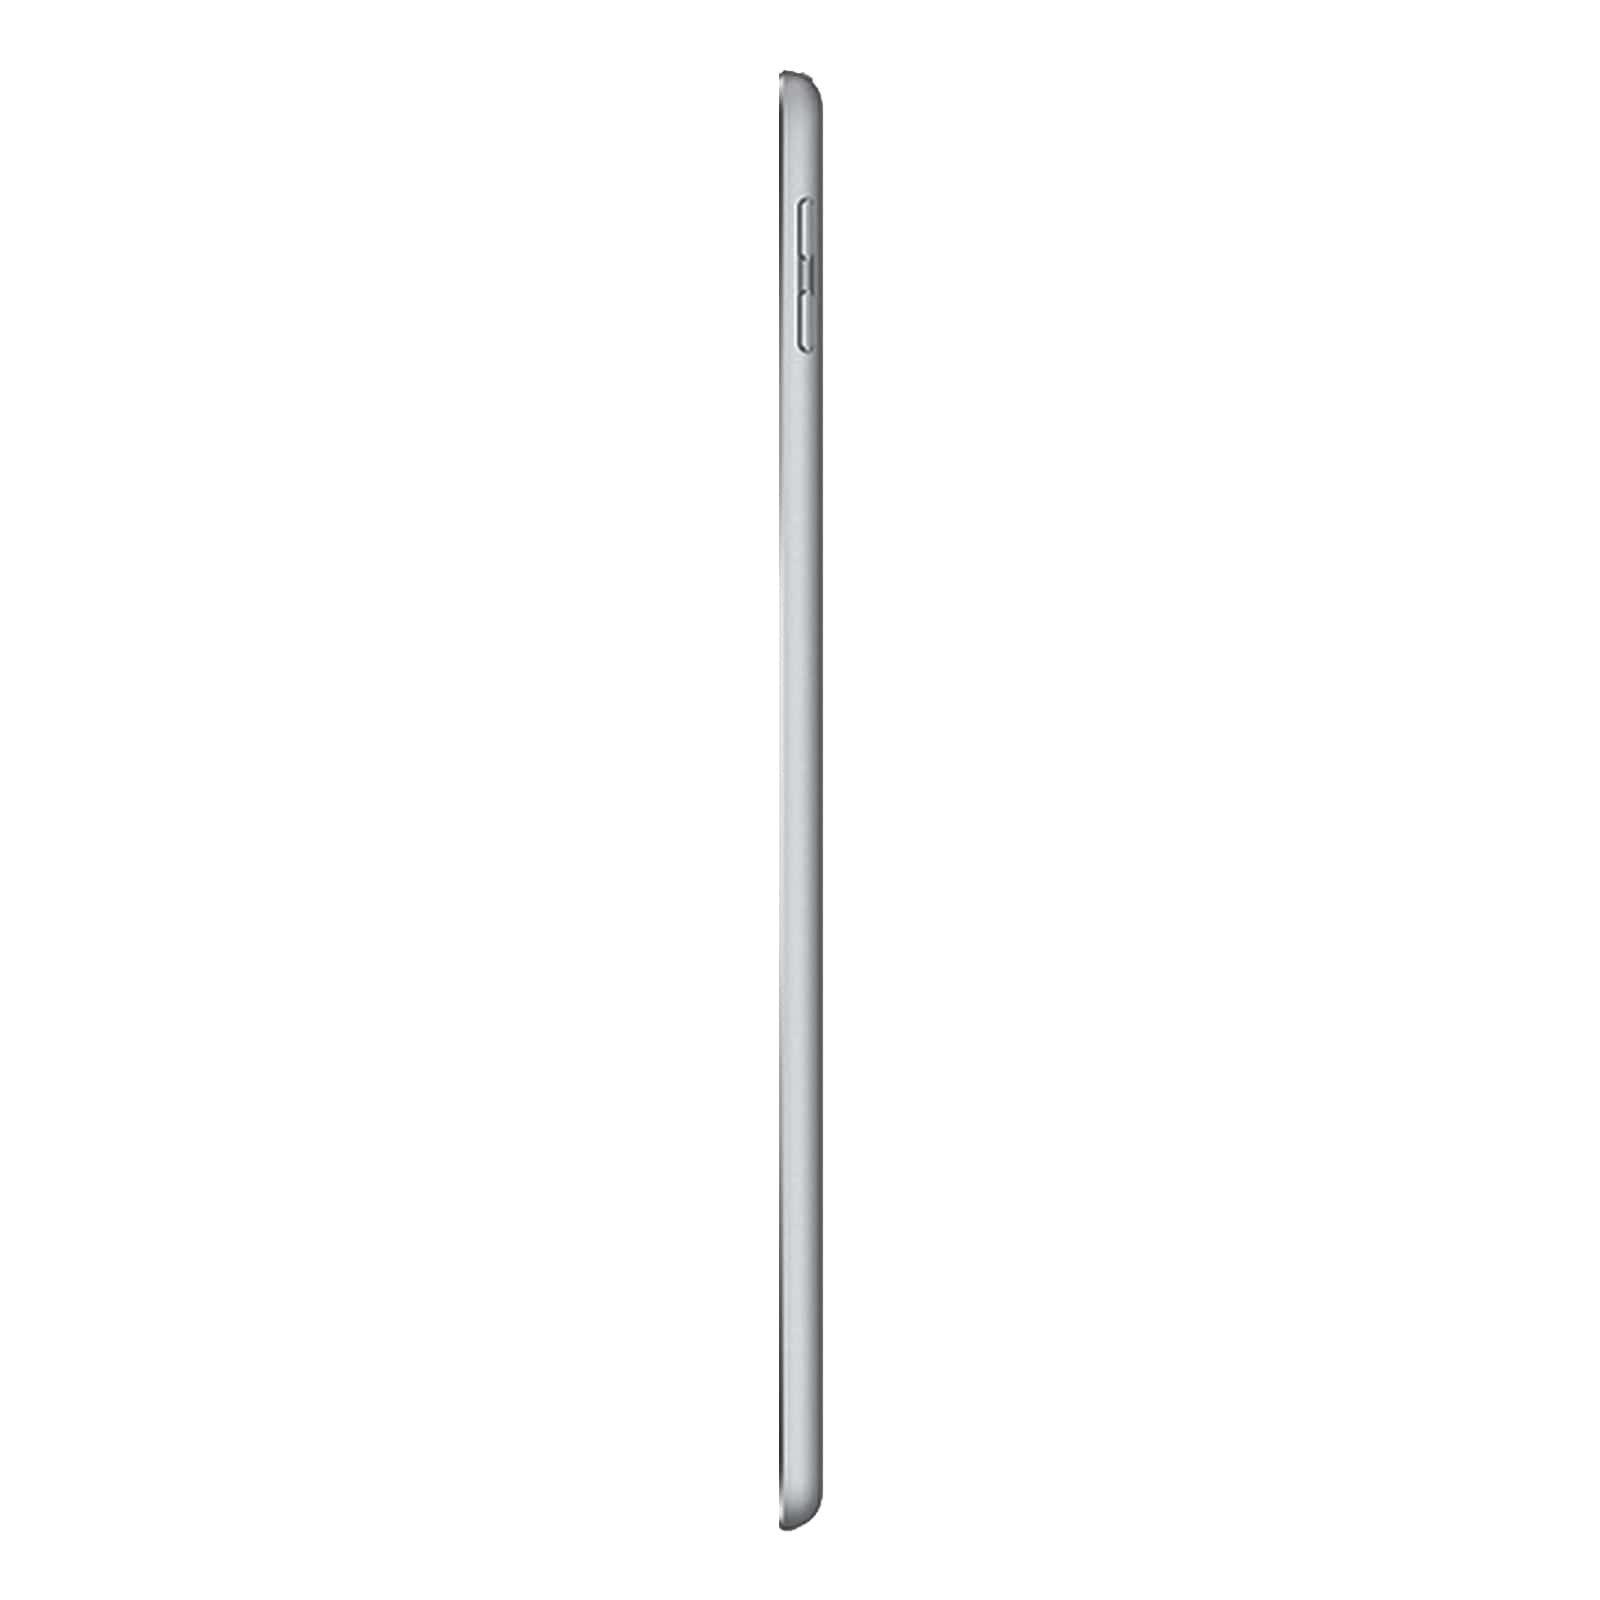 Apple iPad 6 128GB WiFi & Cellular Ohne Vertrag Grau Gut